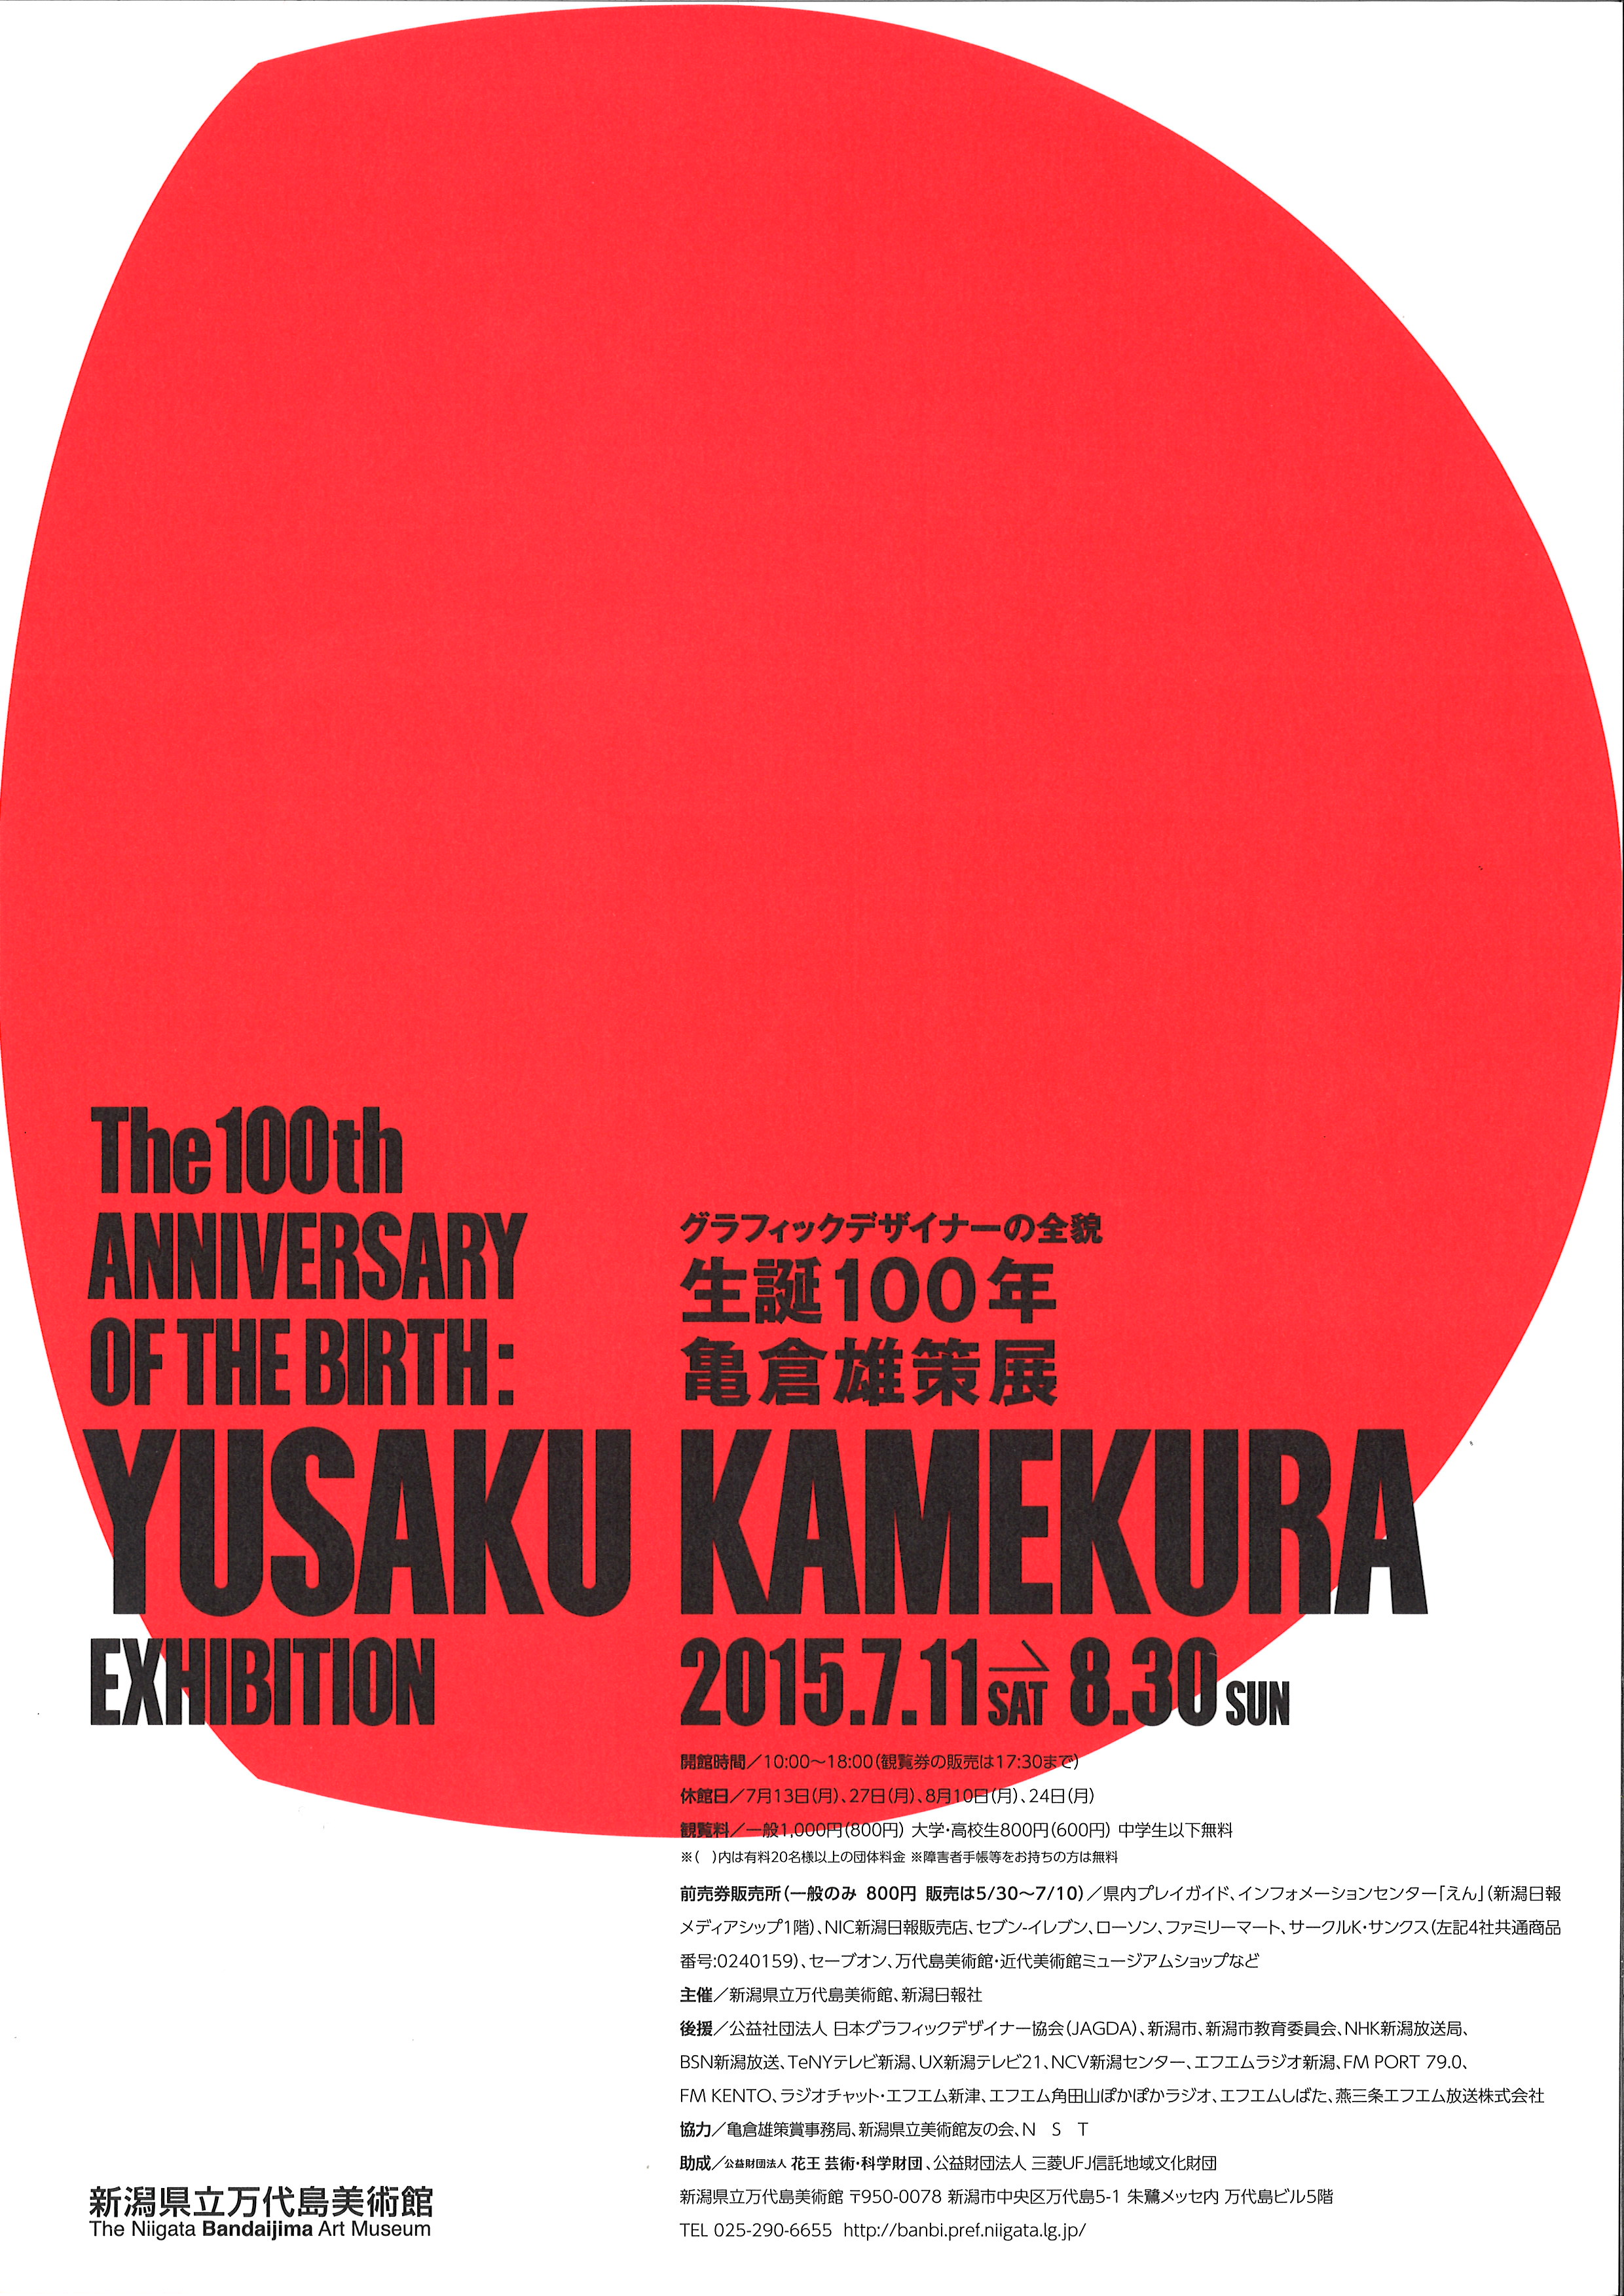 亀倉雄策展」ポスターは、新潟のデザイナー、石川竜太さんによる